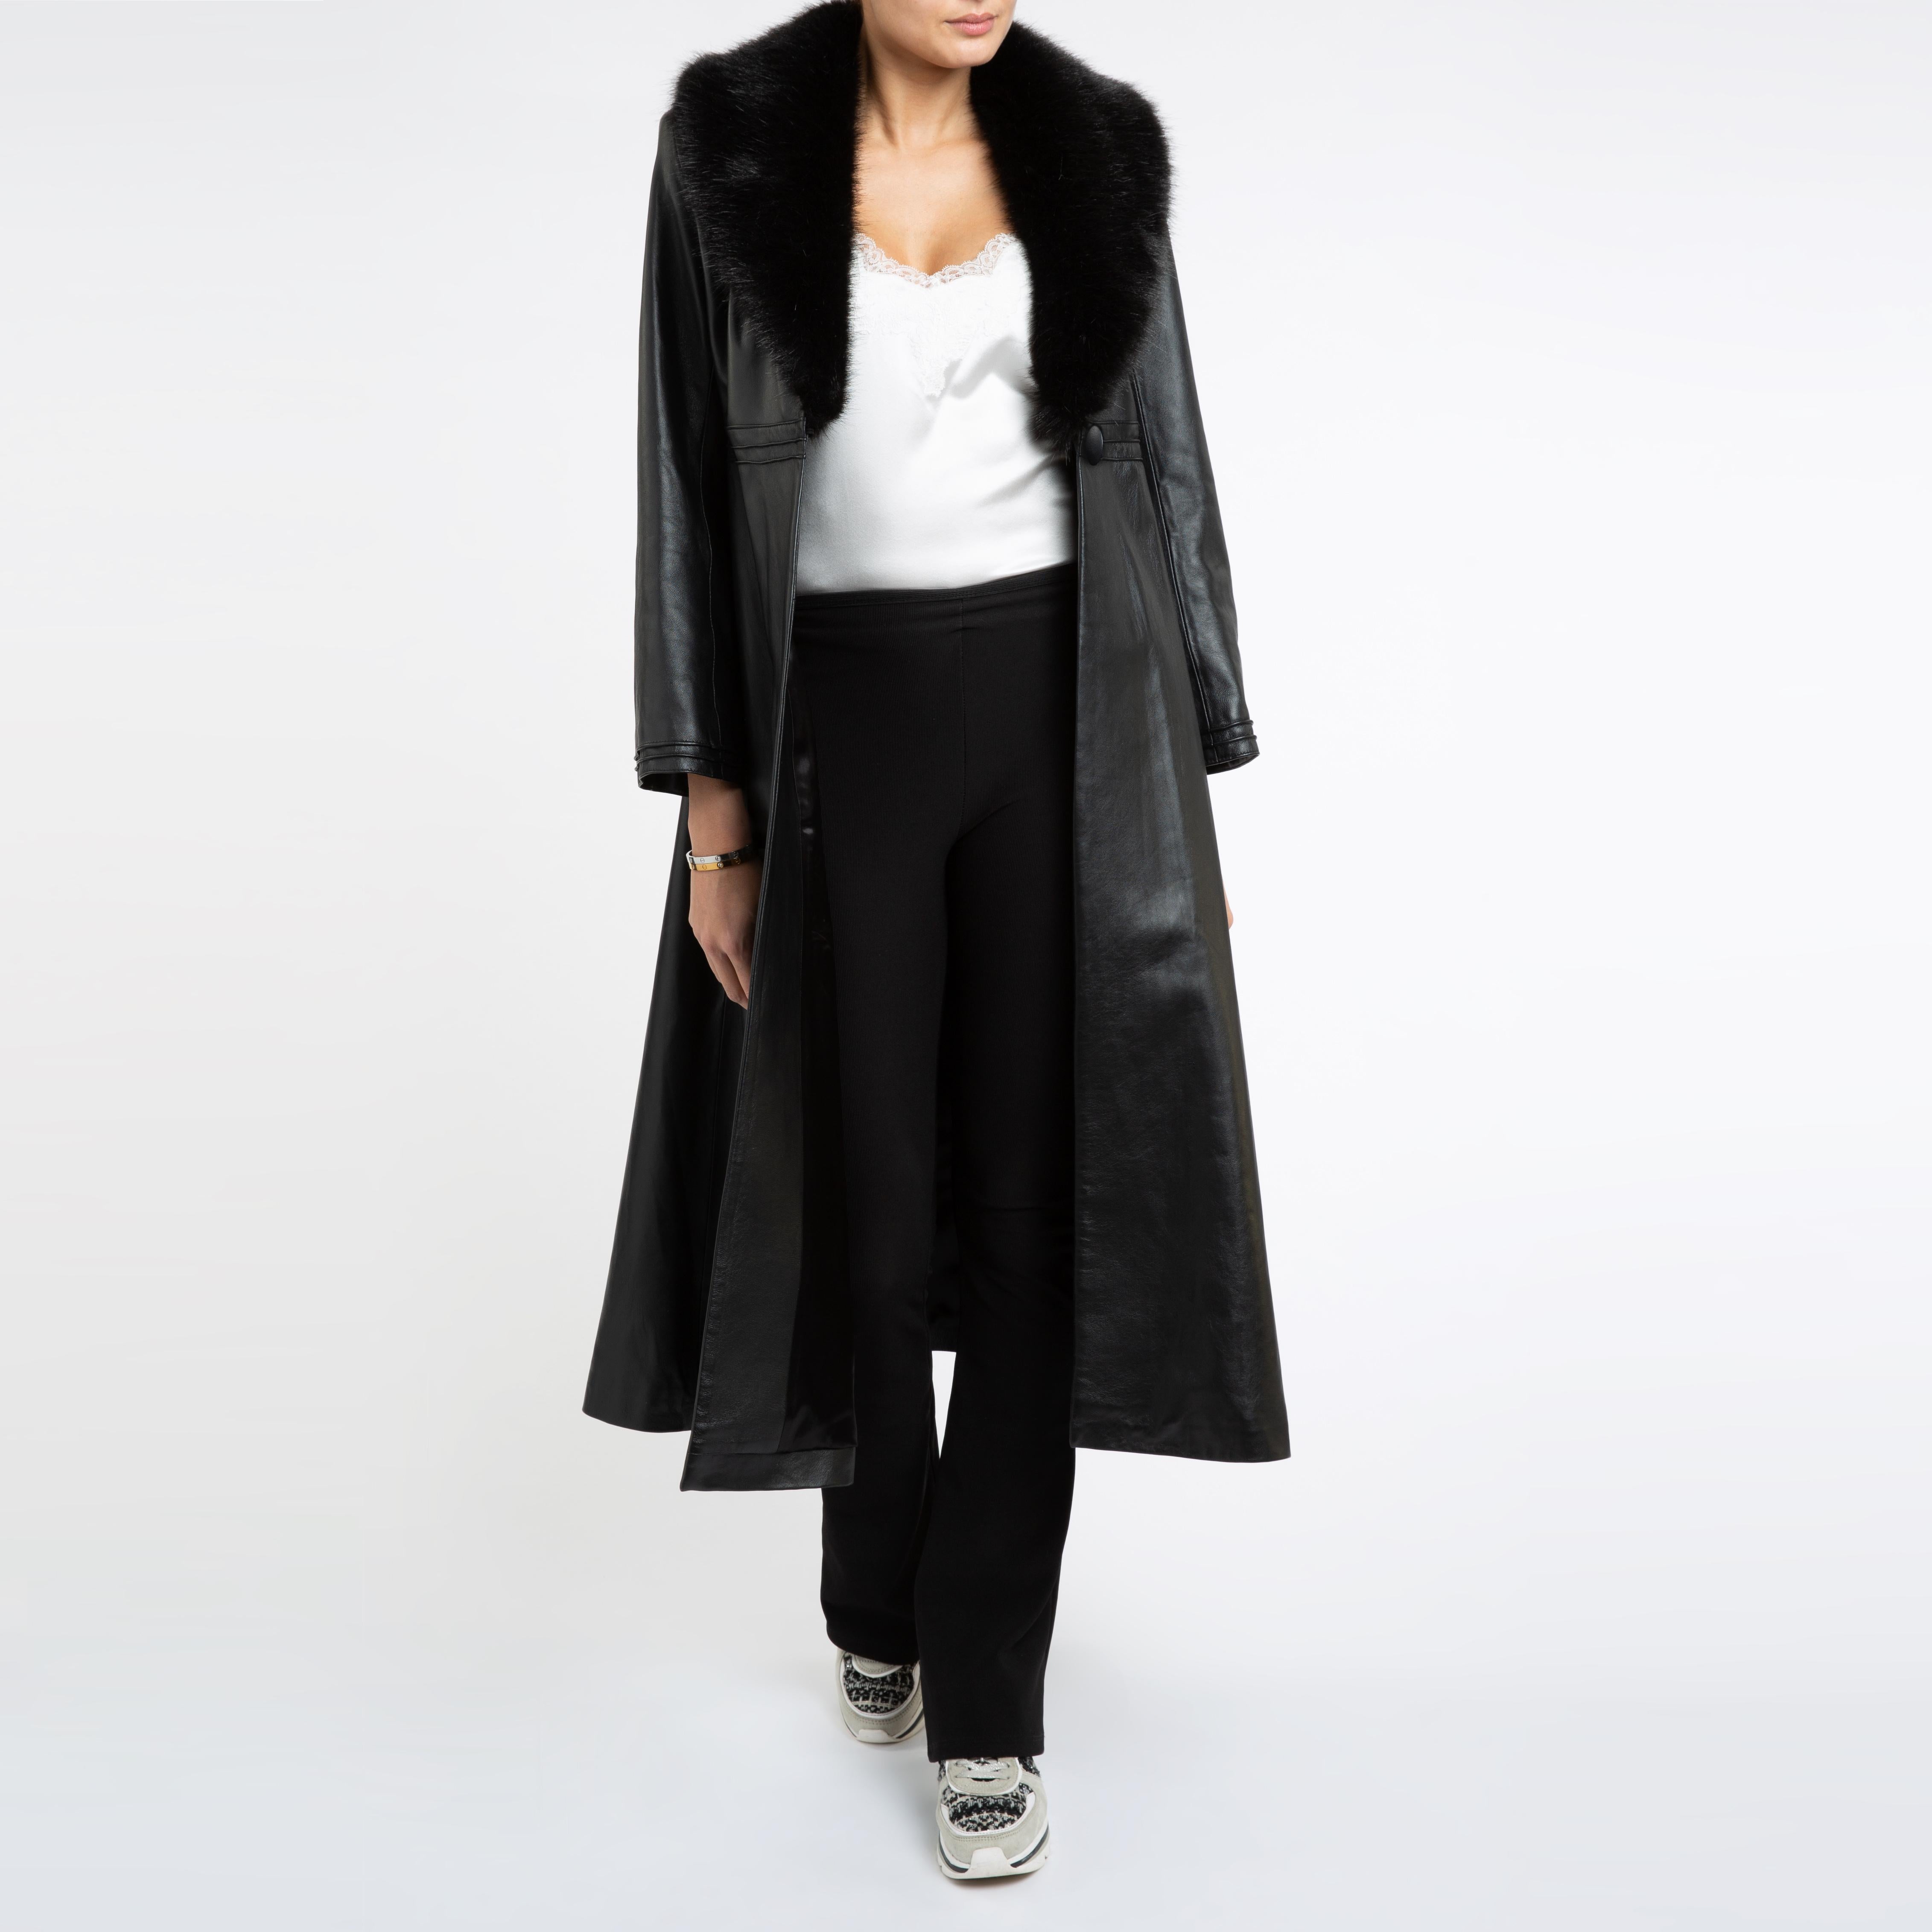 Verheyen London Edward Leather Coat with Faux Fur Collar in Black - Size uk 8 13